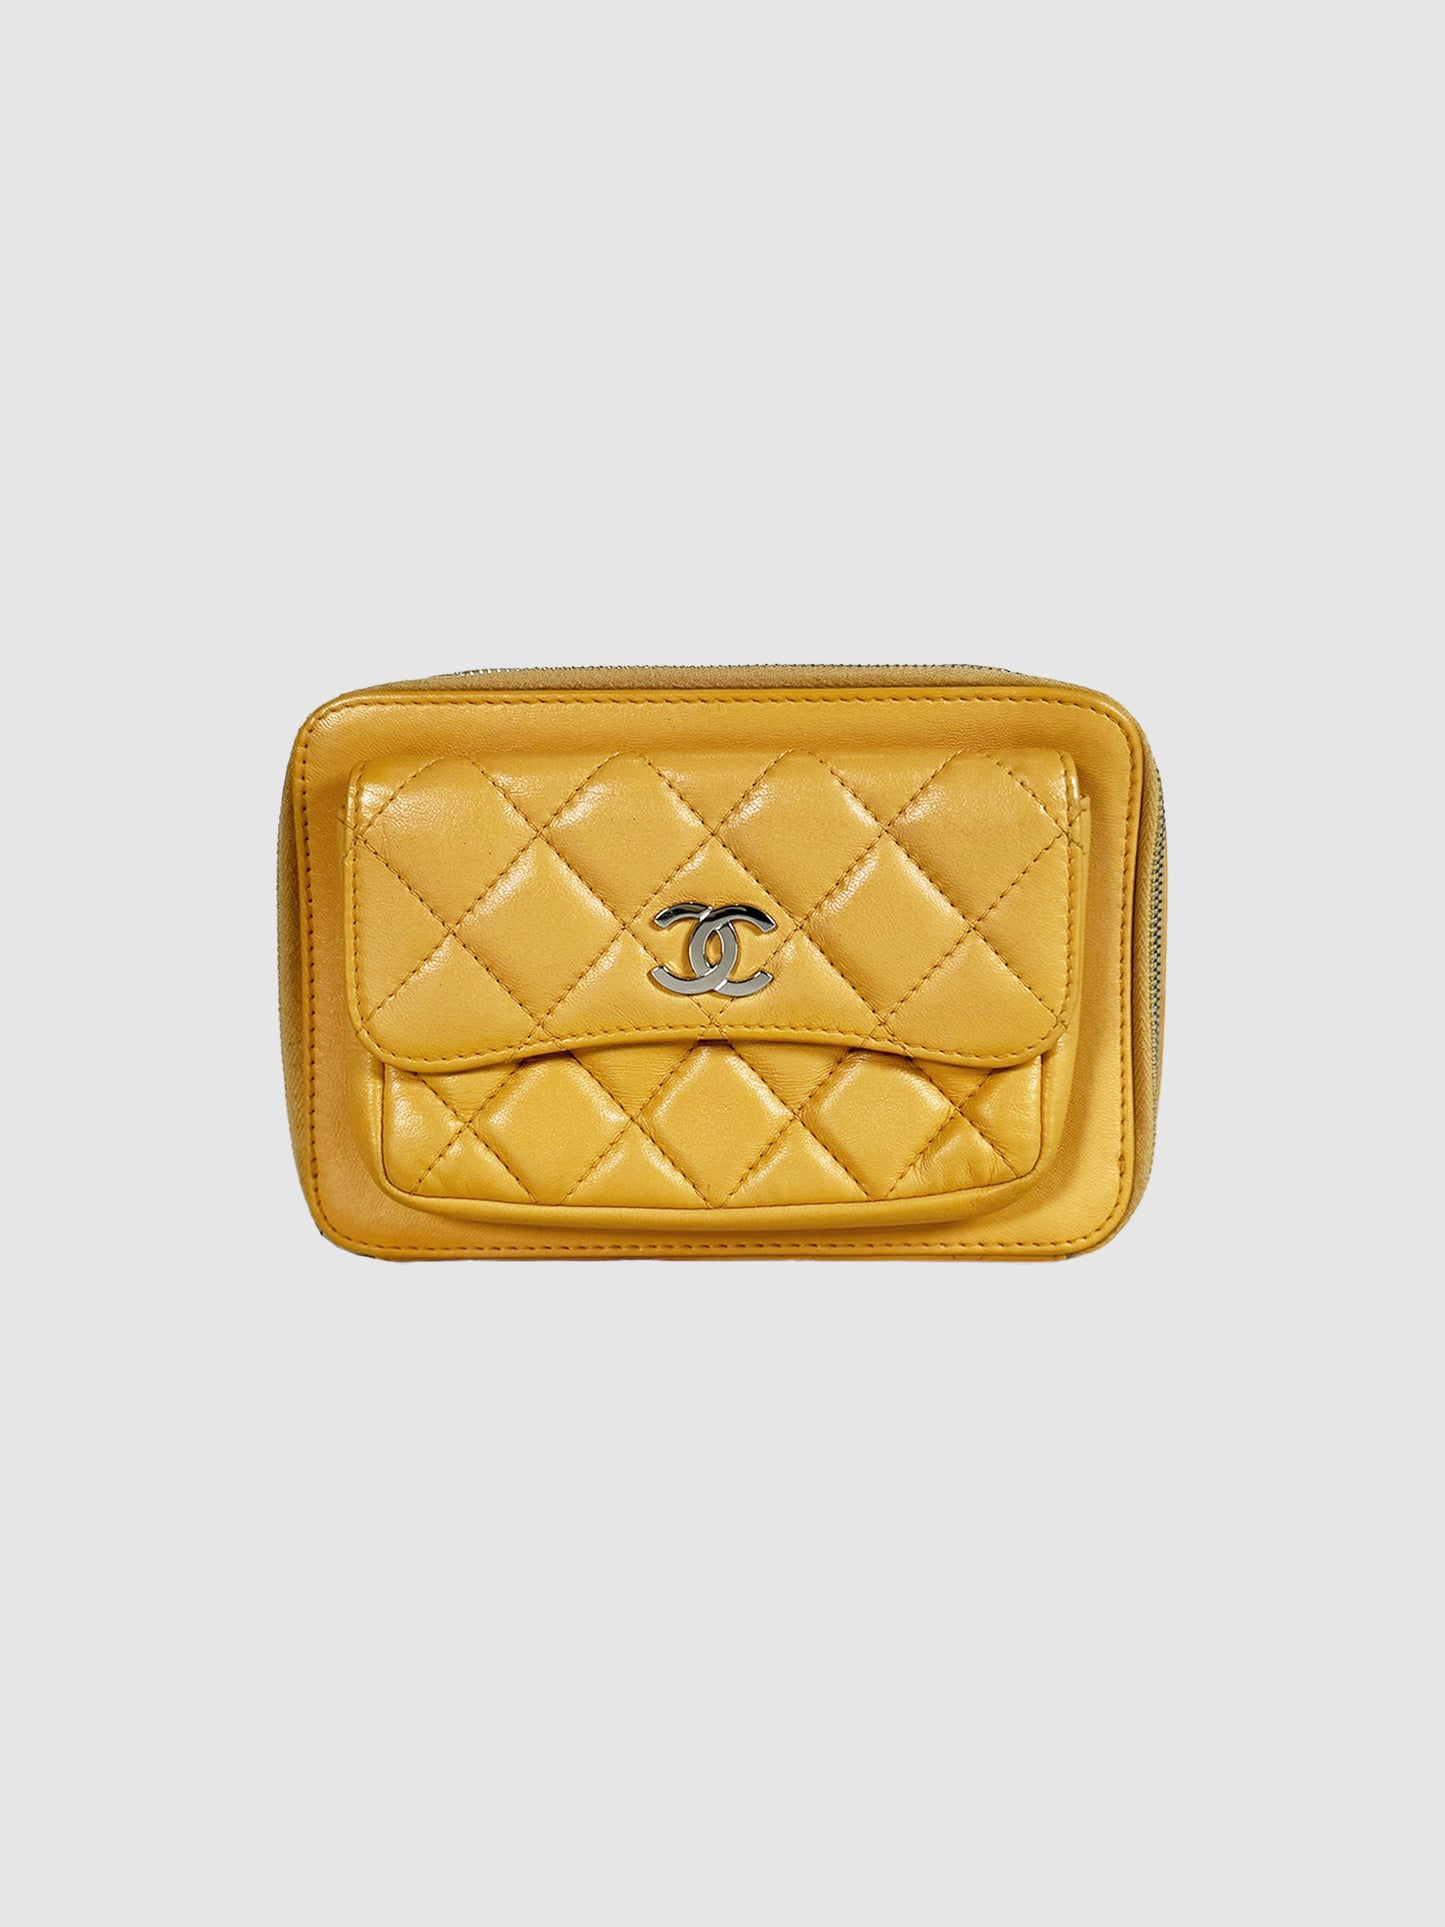 Chanel Mini Box Bag in Yellow Leather